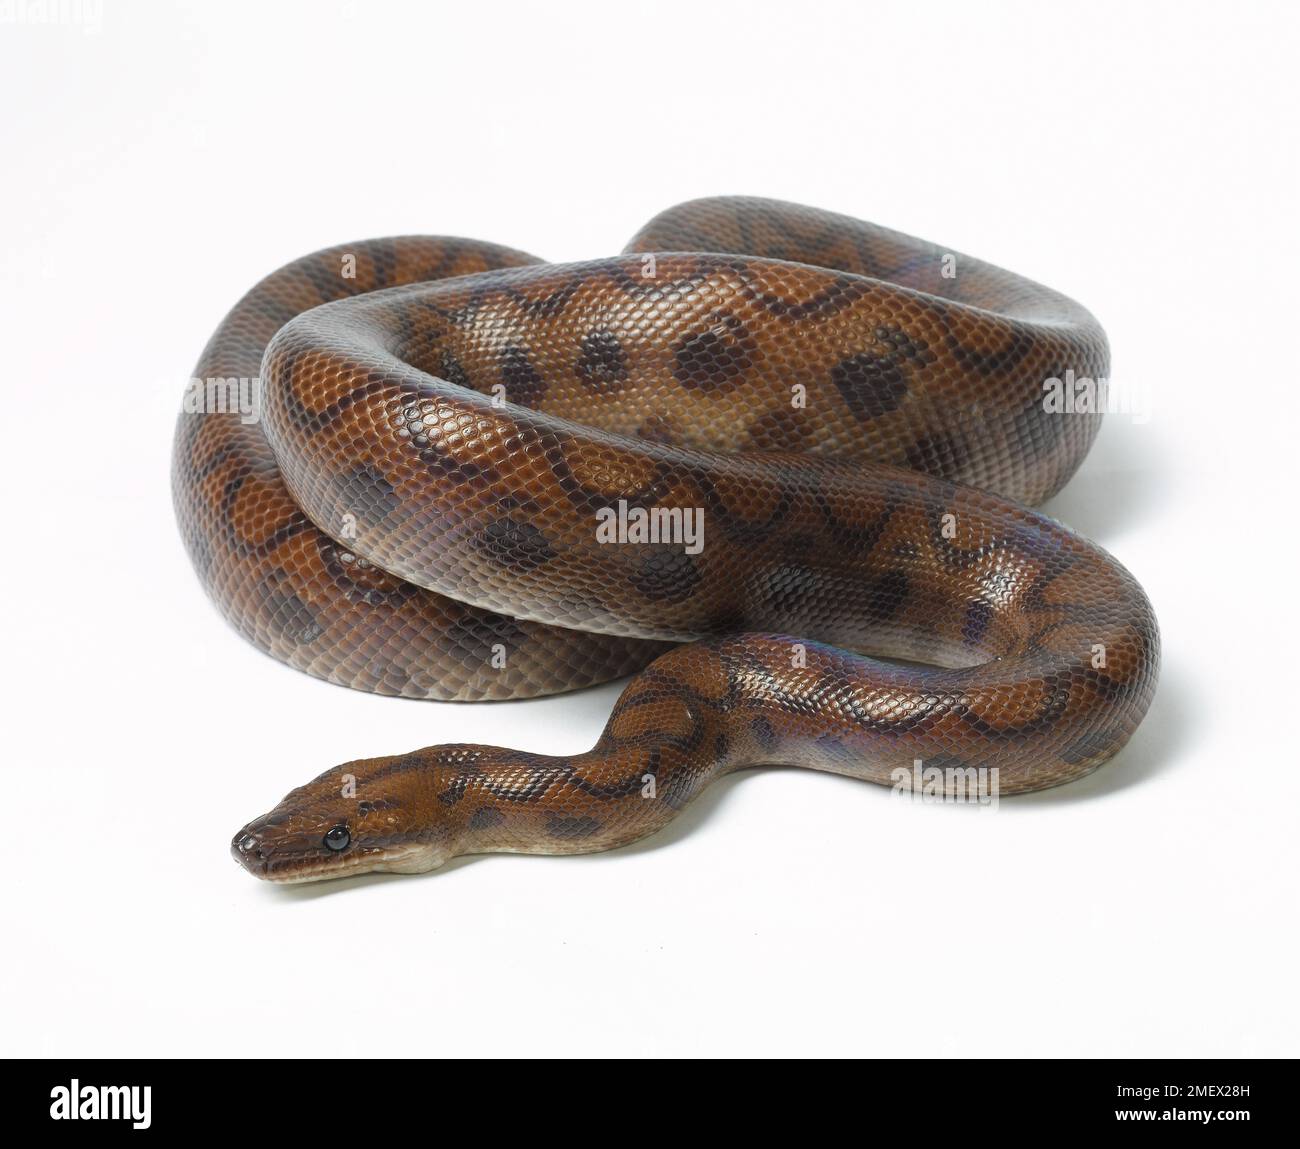 Rainbow boa, snake Stock Photo